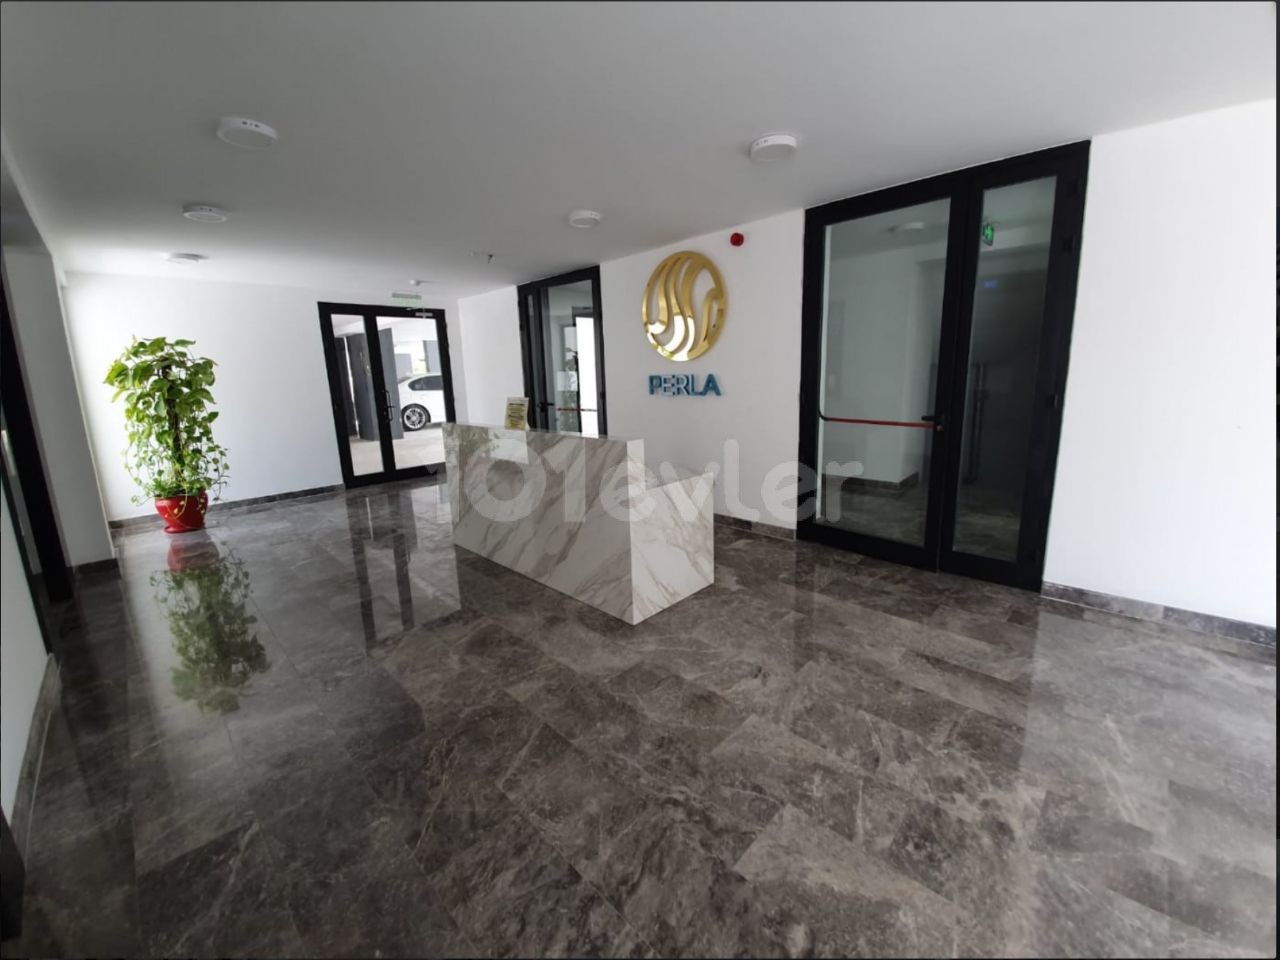 3+1 Flat for sale in Perla Residence in Kyrenia Center